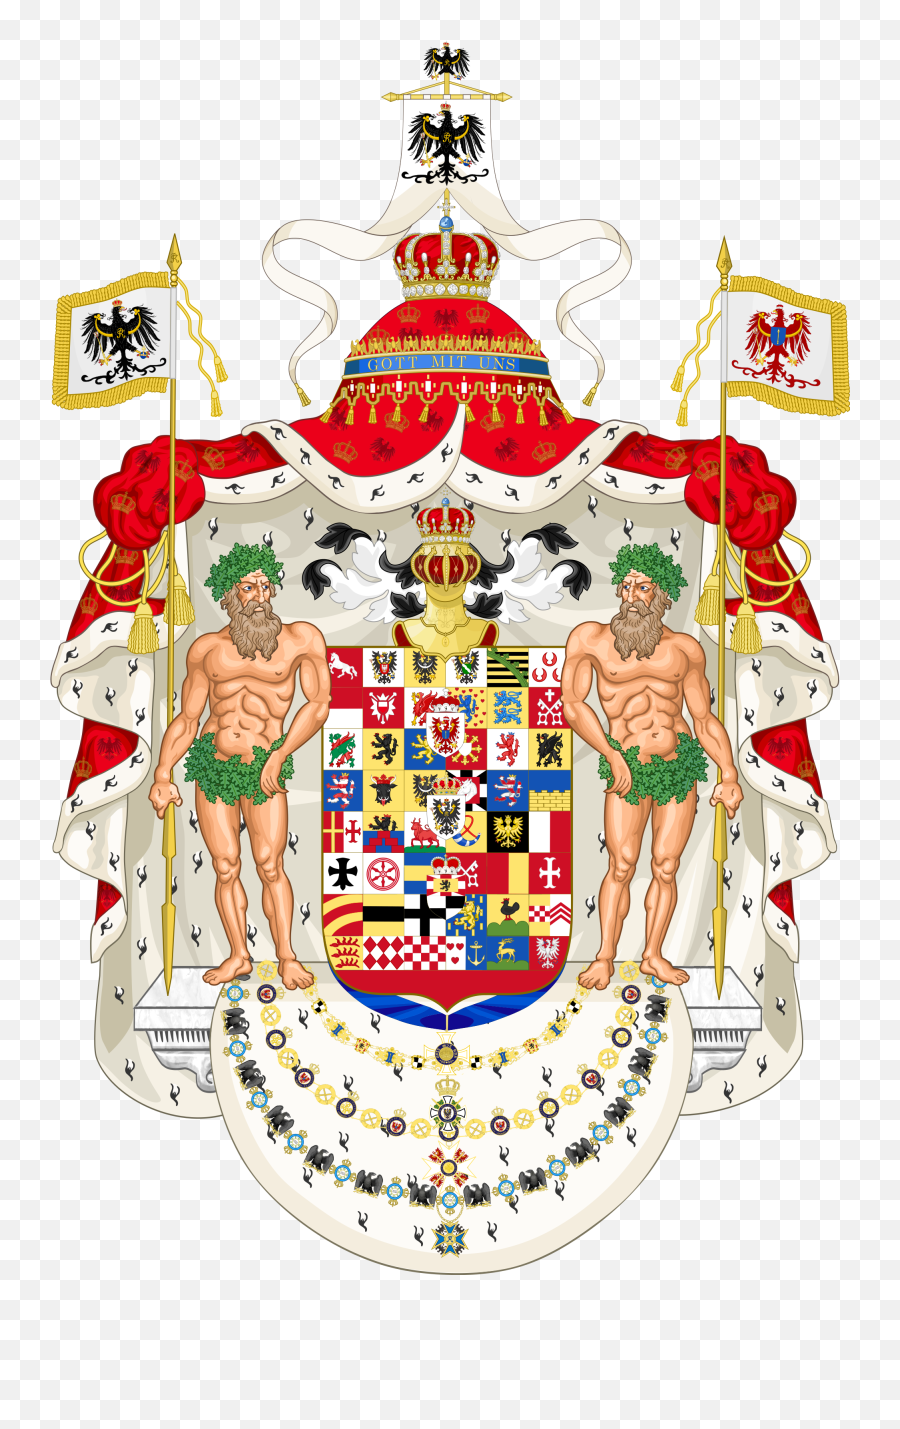 Dusios - Kingdom Of Prussia Coat Of Arms Emoji,Lay Down Emoji